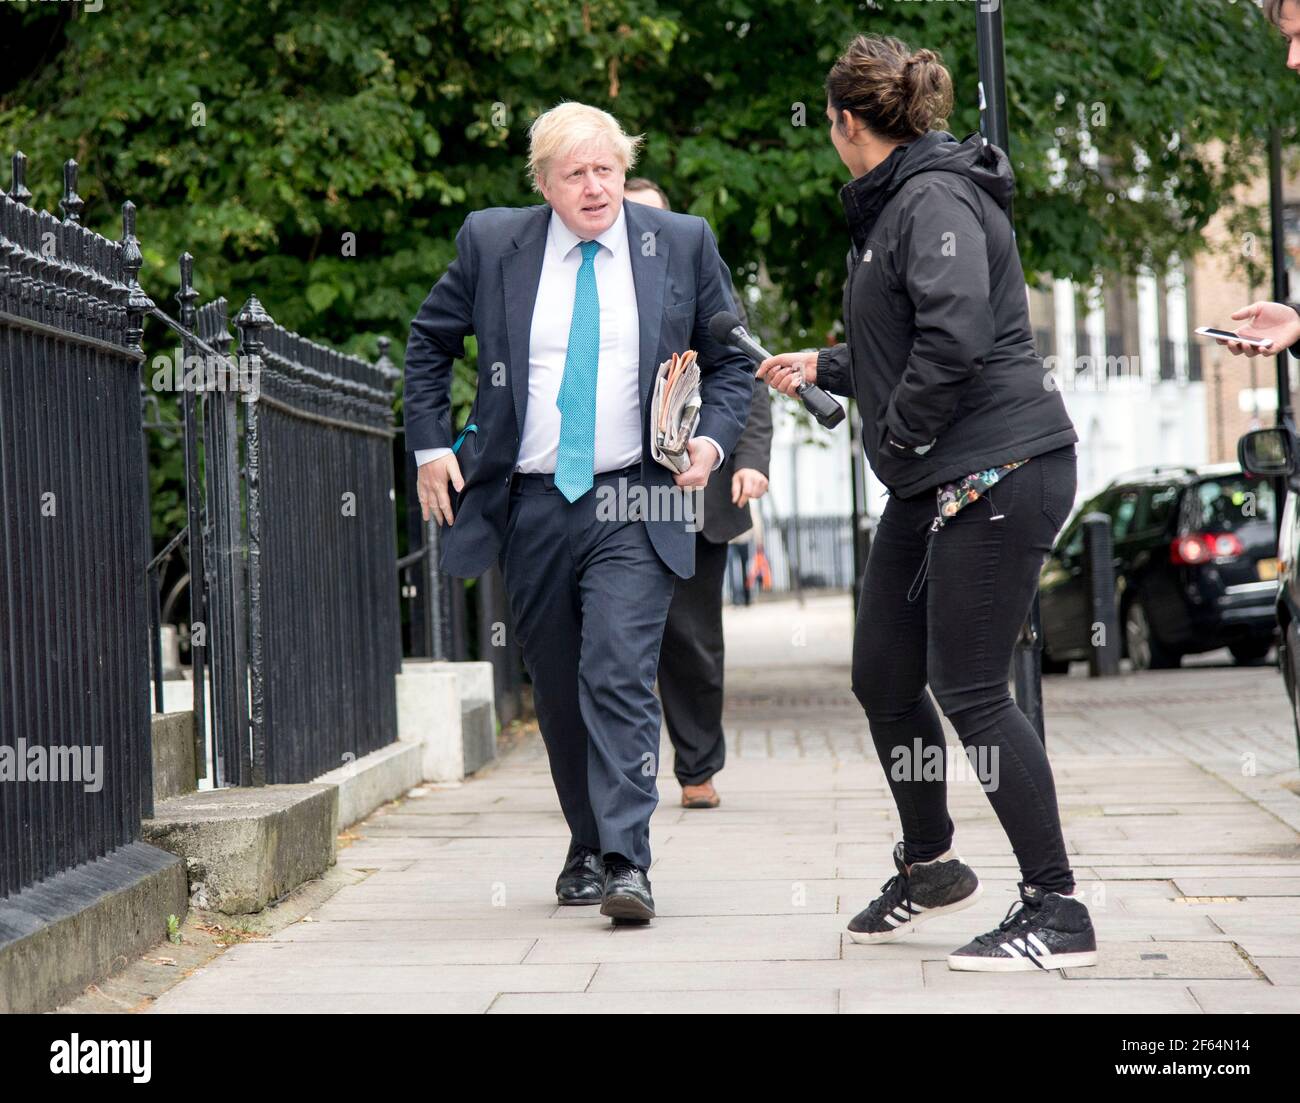 Pic shows: Boris Johnson quitte sa maison dans la verdure d'Islington aujourd'hui bourré par le journaliste de télévision désespéré pour une citation. Il avait l'air un peu surpris comme Marc Banque D'Images